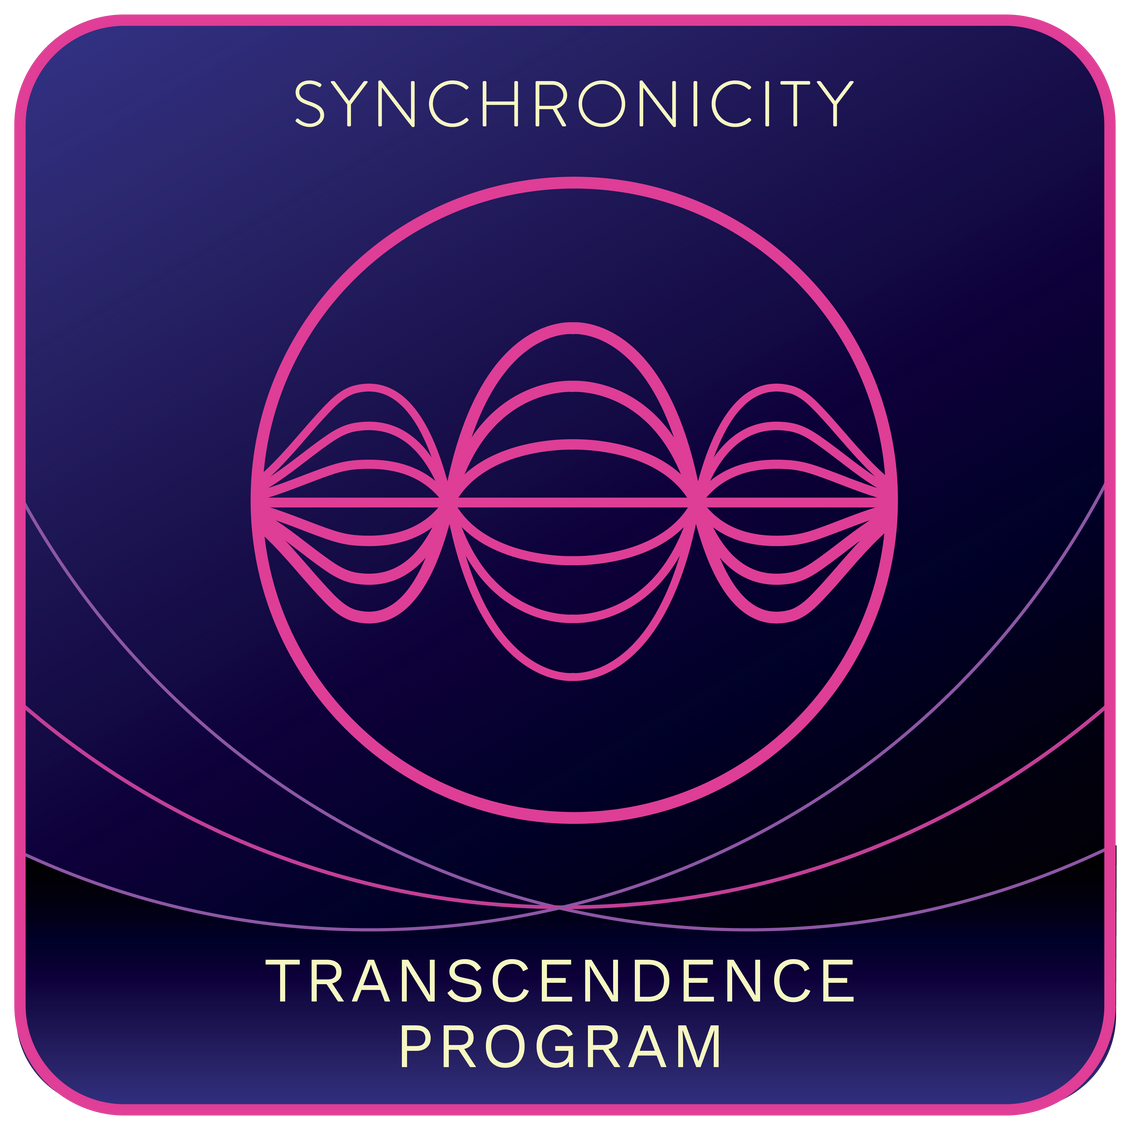 Transcendence Program Phase 1